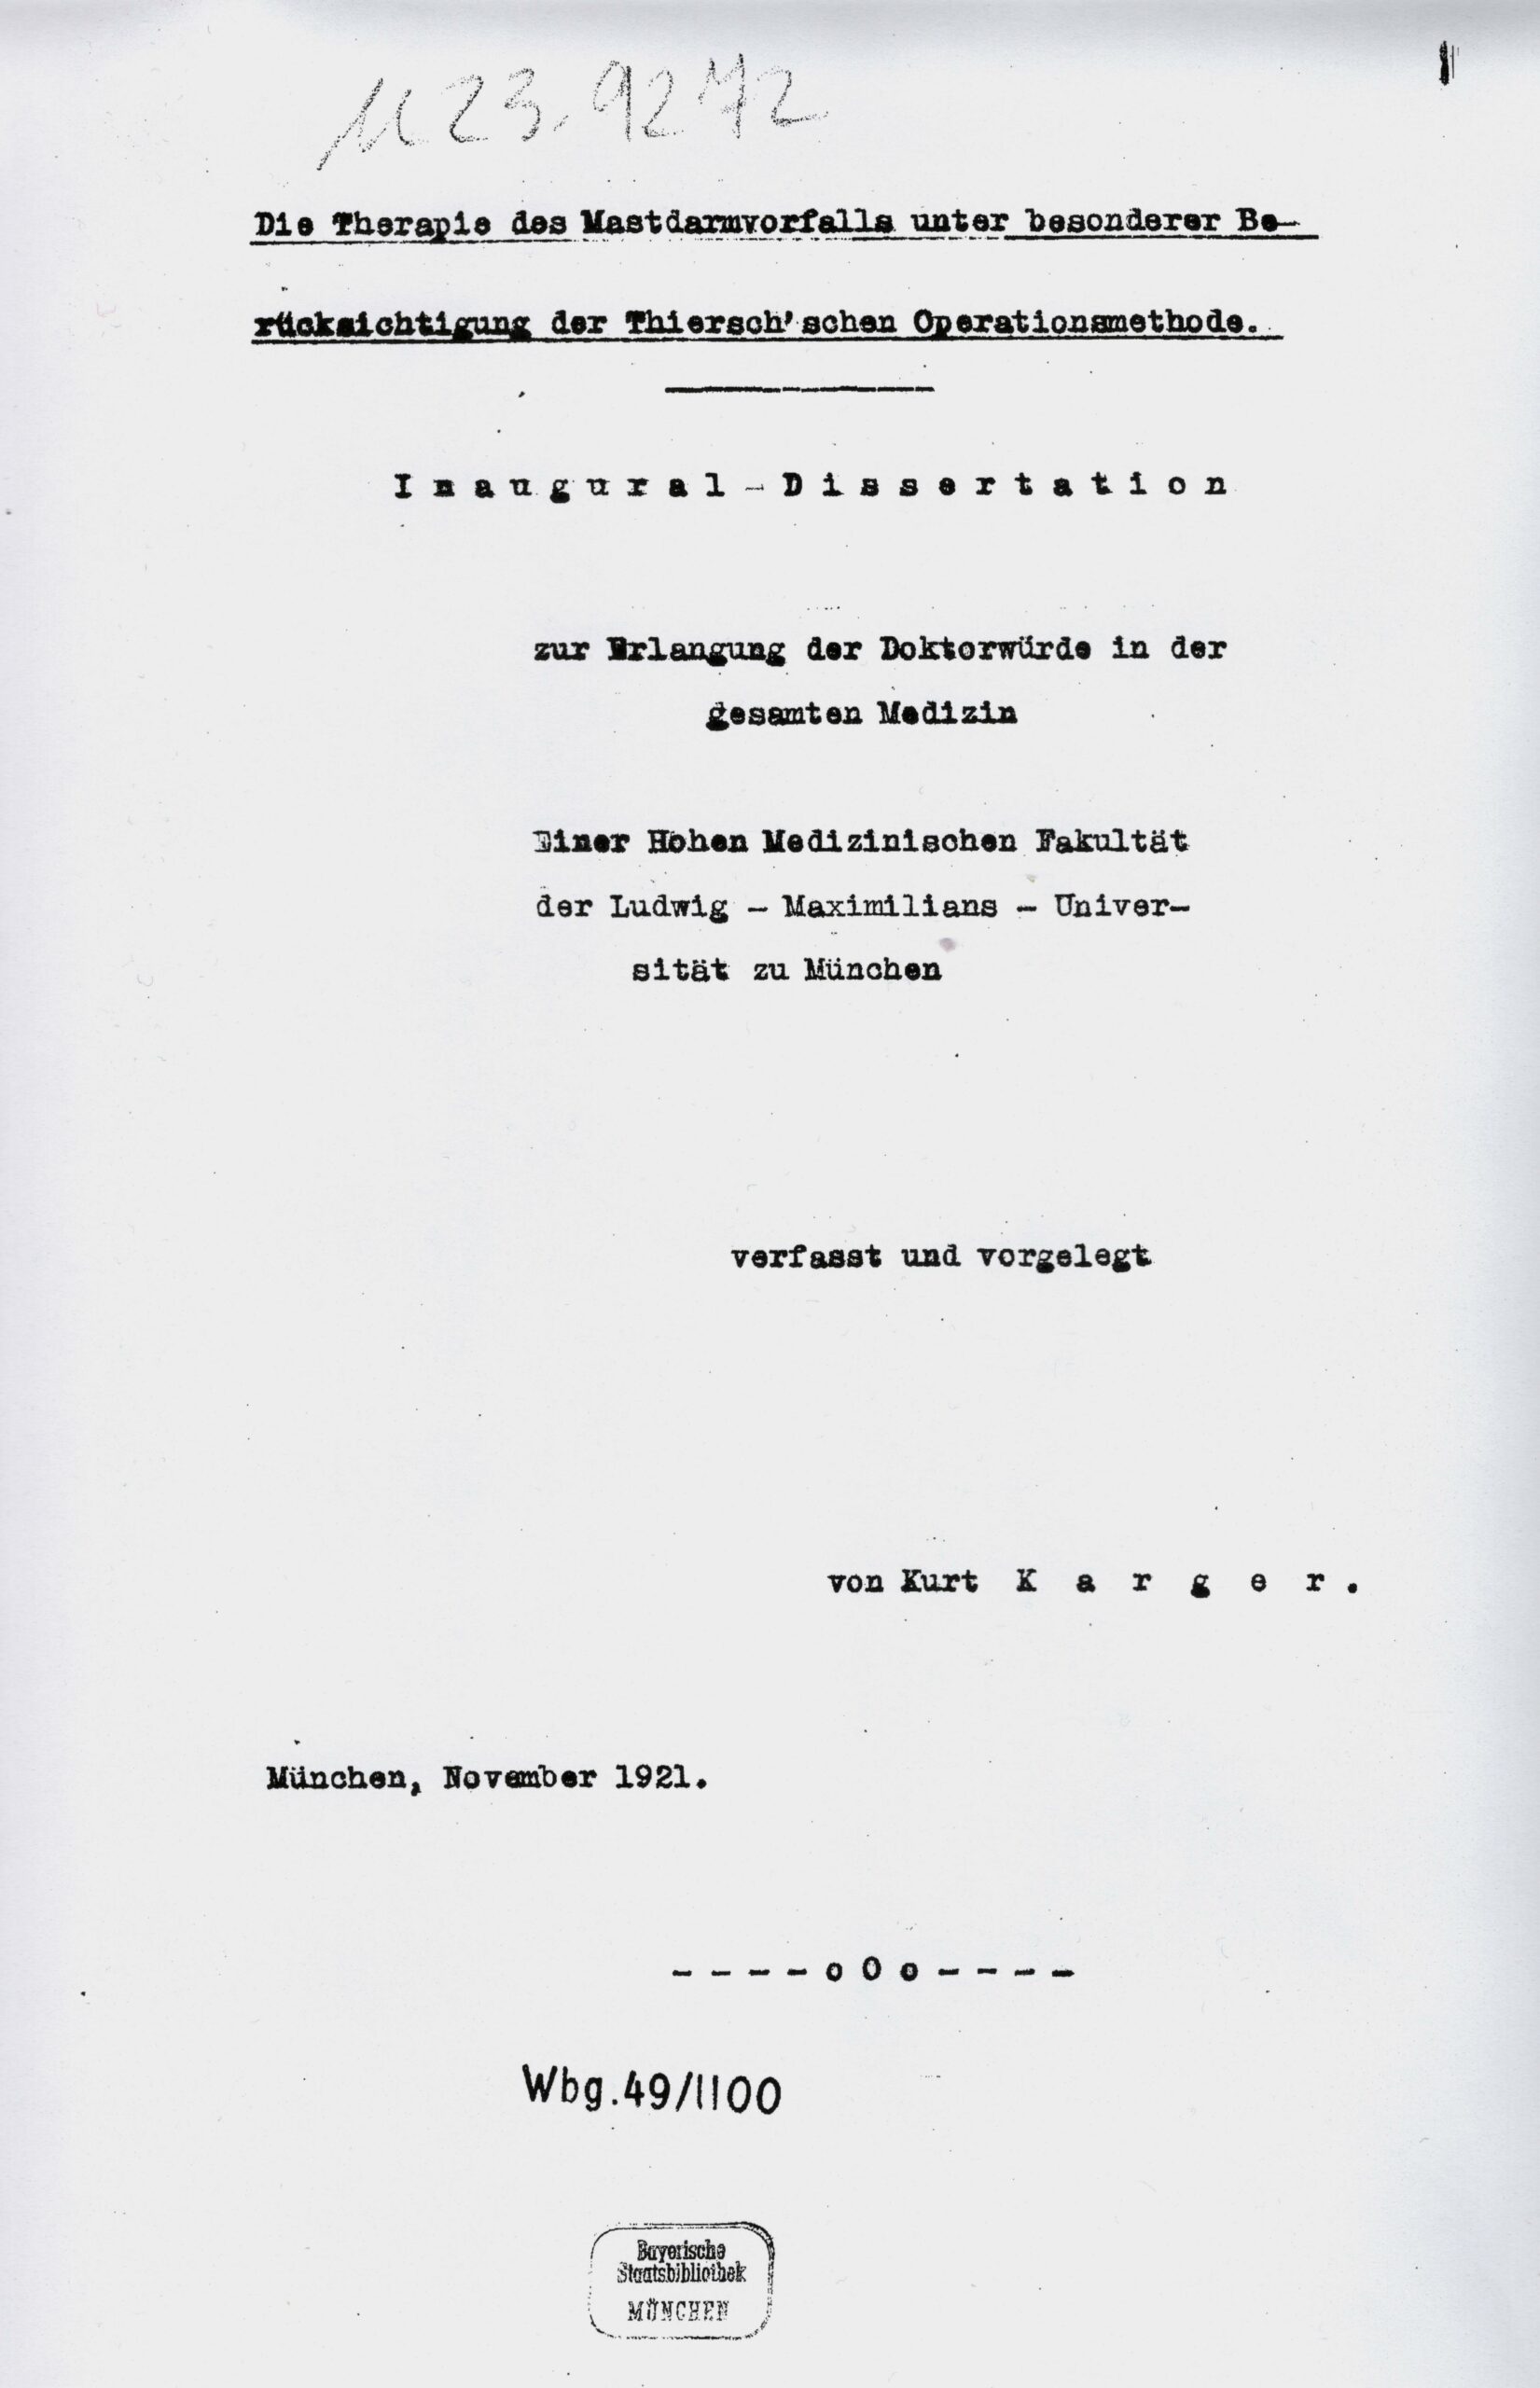 Dissertation, München 1921